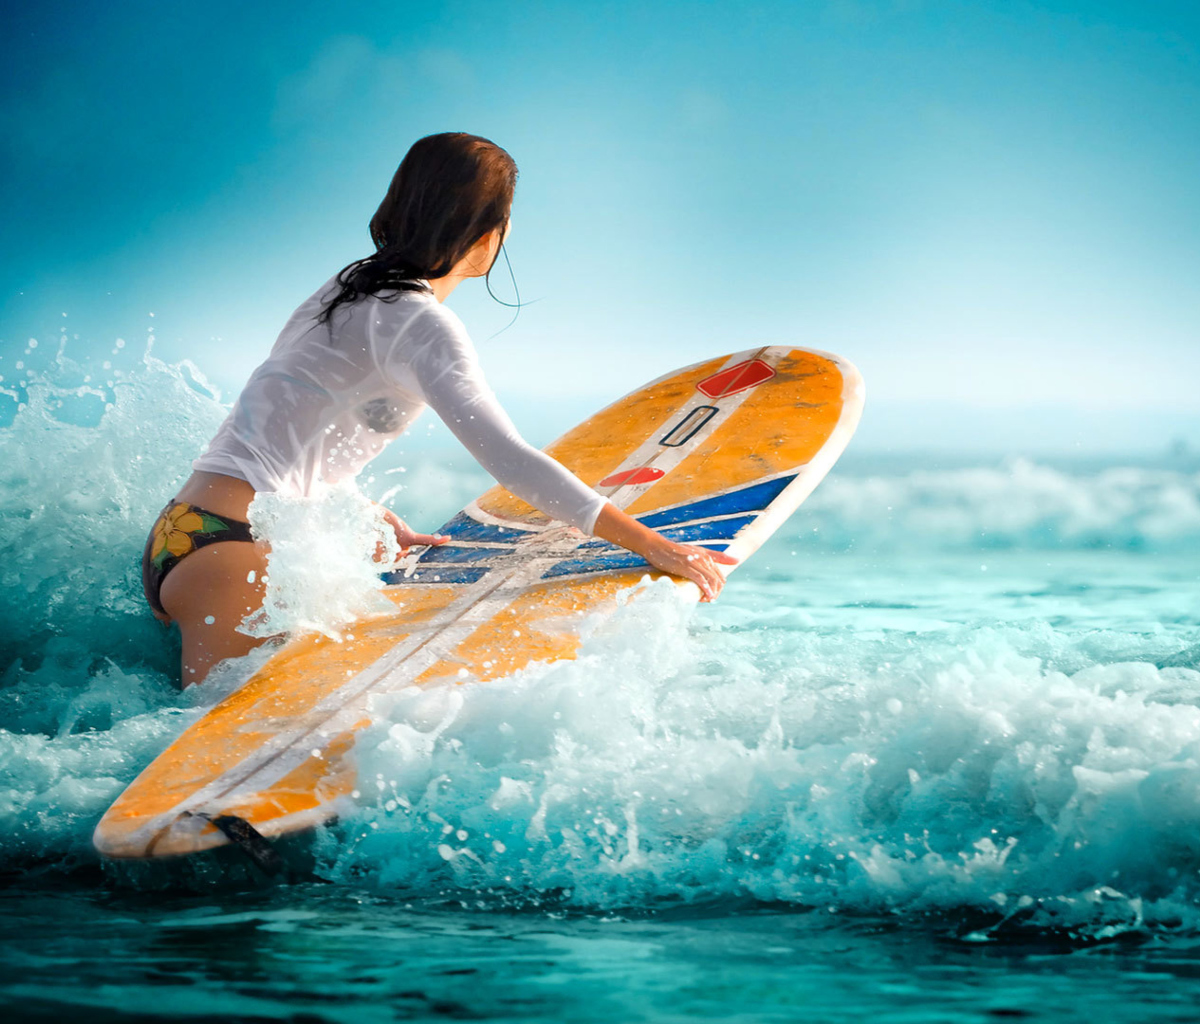 Обои Surfing Girl 1200x1024